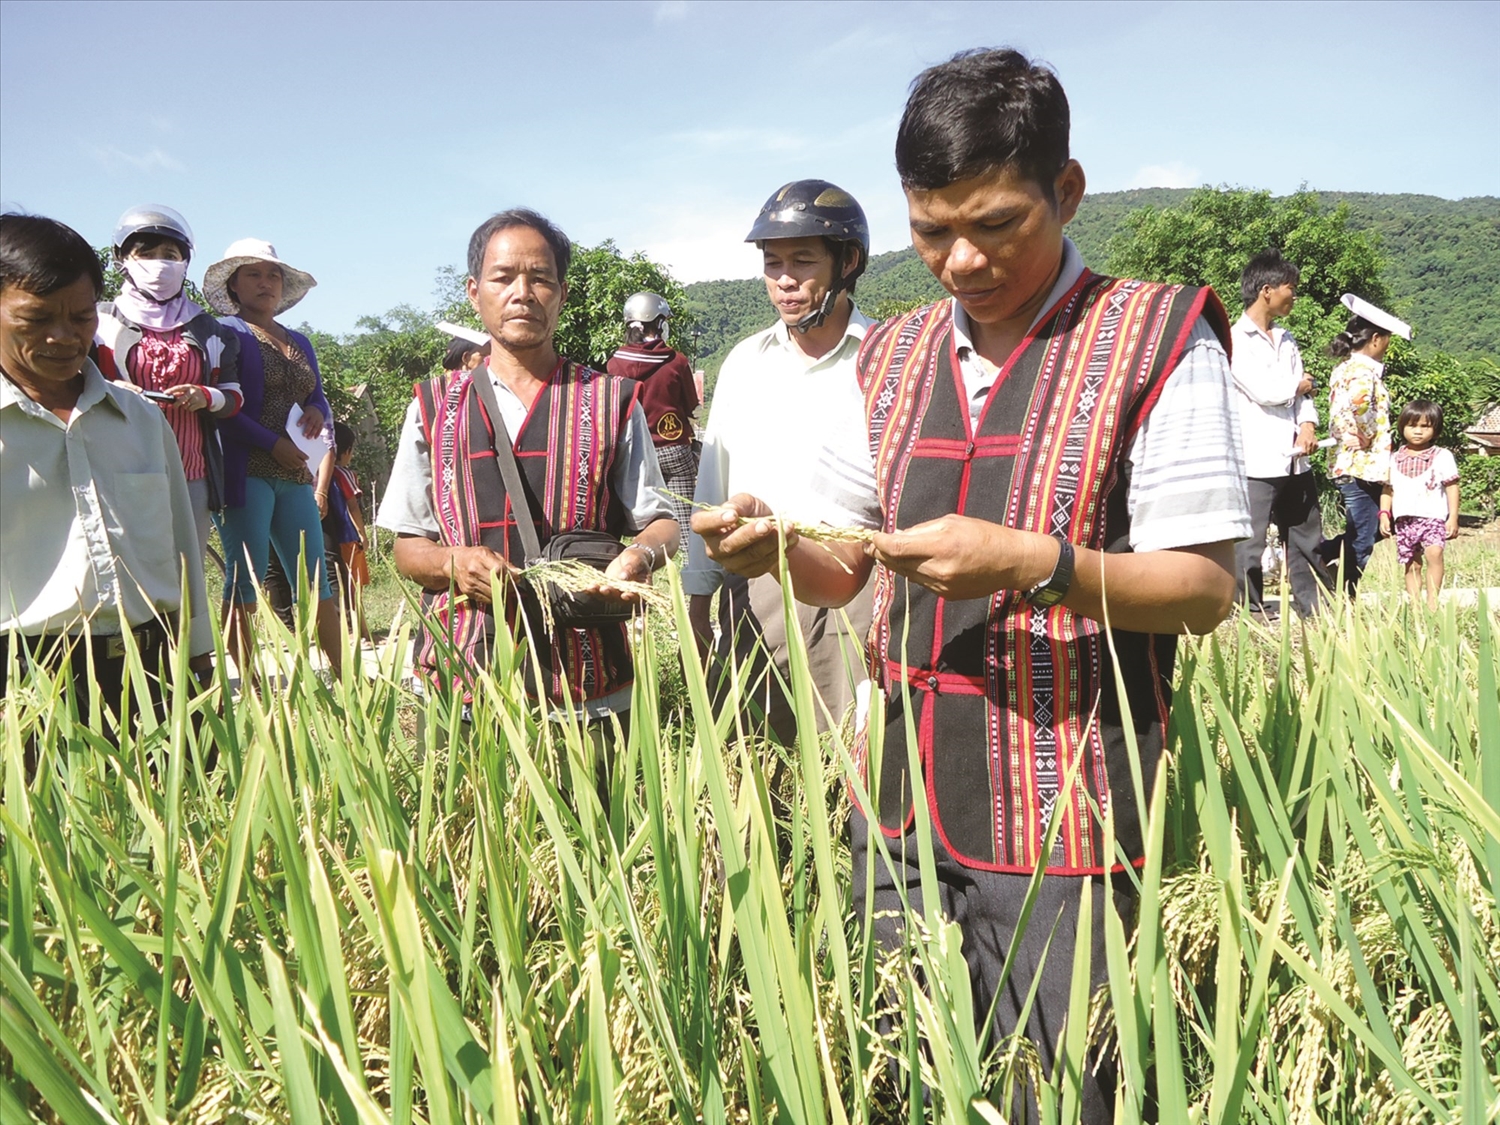 Tỉnh Bình Định đang tập trung nguồn lực giúp đồng bào DTTS giảm nghèo (Trong ảnh, mô hình sản xuất lúa lai của đồng bào DTTS huyện Vĩnh Thạnh)